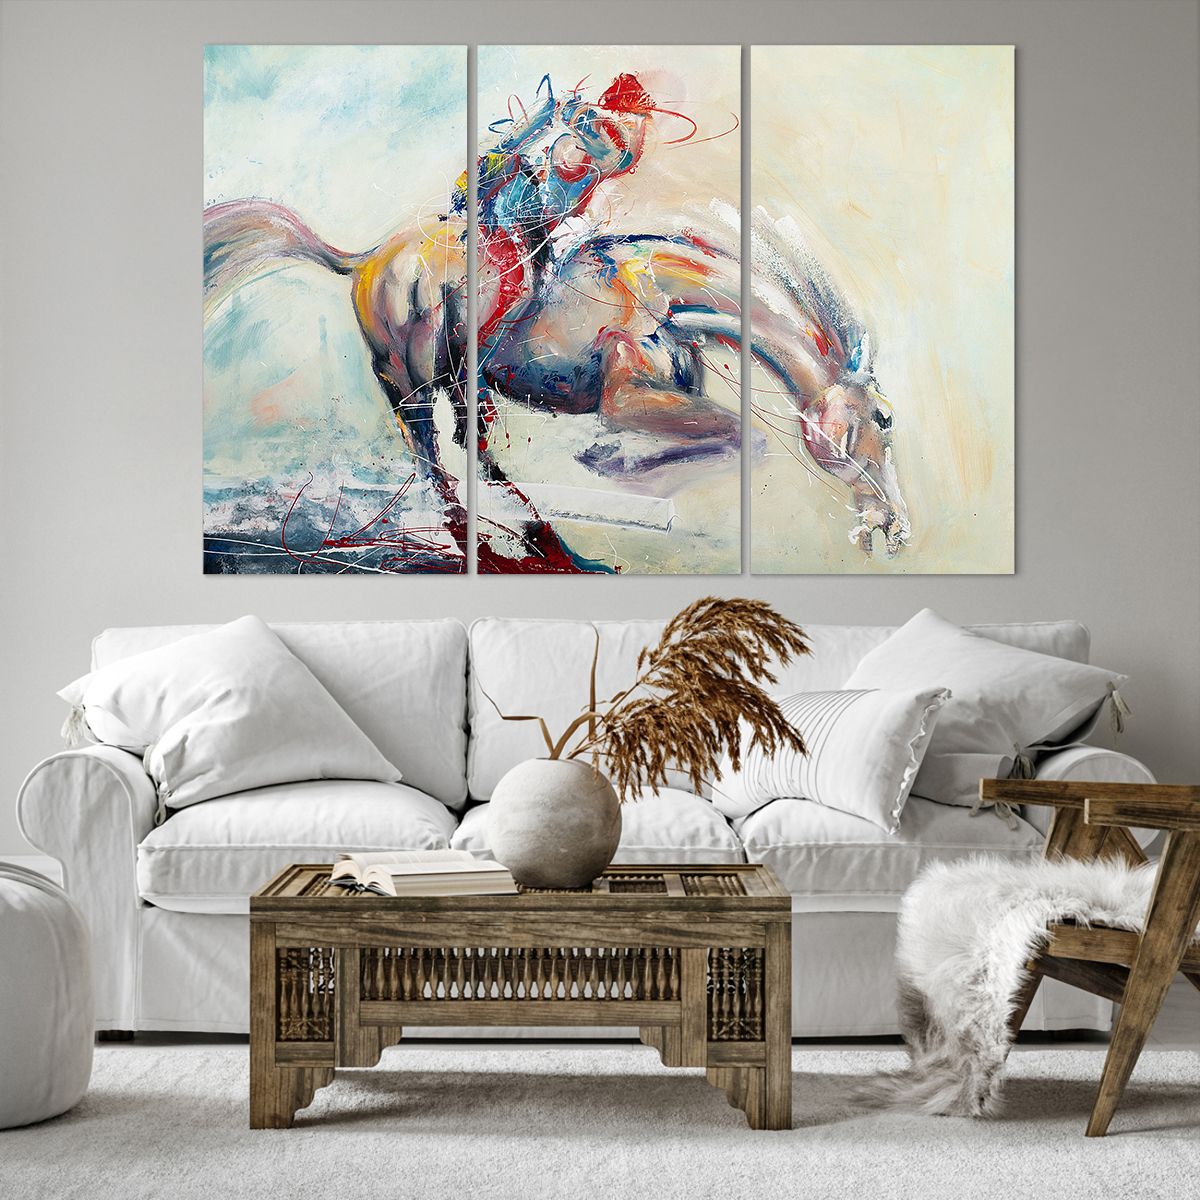 Bild auf Leinwand Tiere, Bild auf Leinwand Pferd, Bild auf Leinwand Fahrer, Bild auf Leinwand Jockey, Bild auf Leinwand Kunst